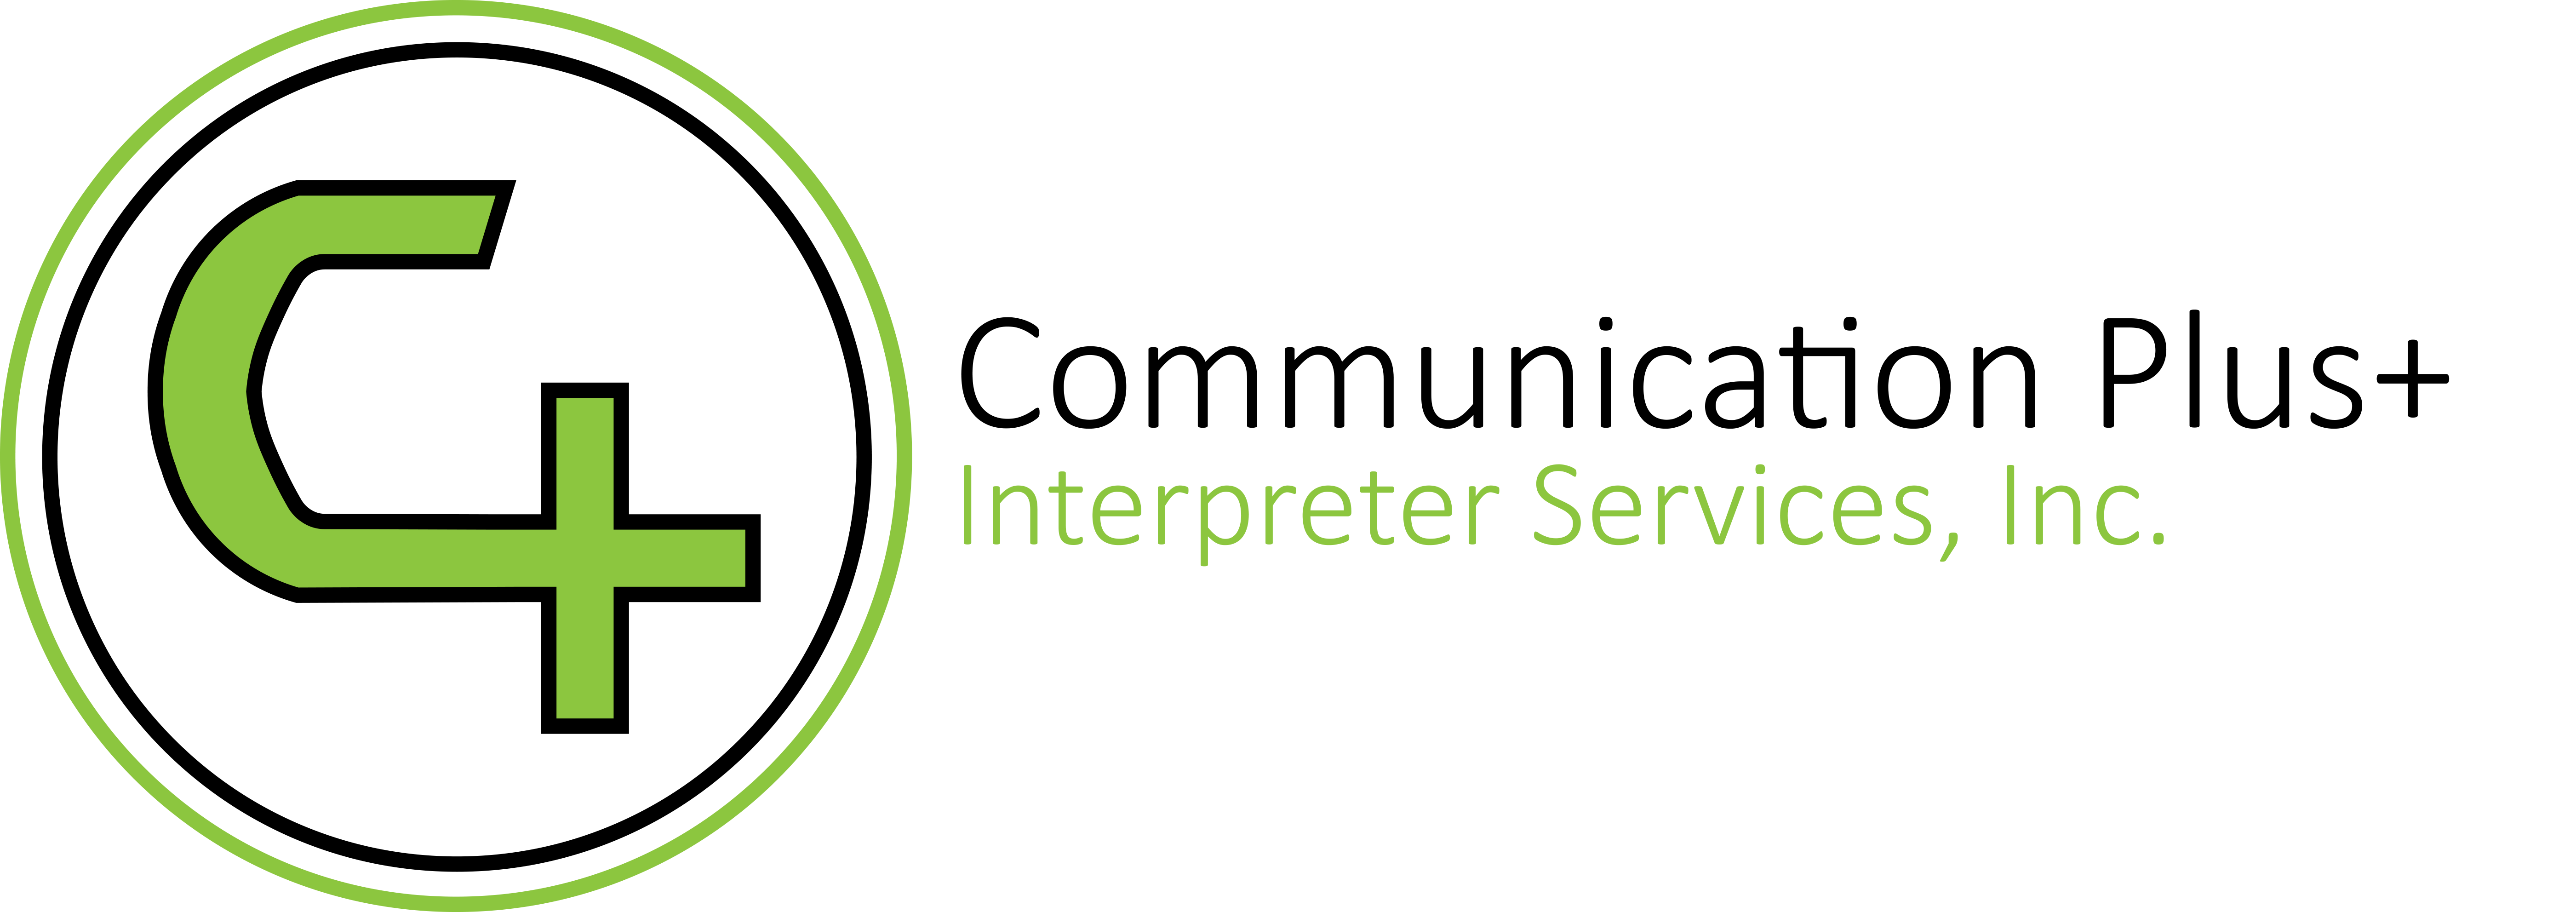 Communication Plus+ Interpreter Services, Inc.